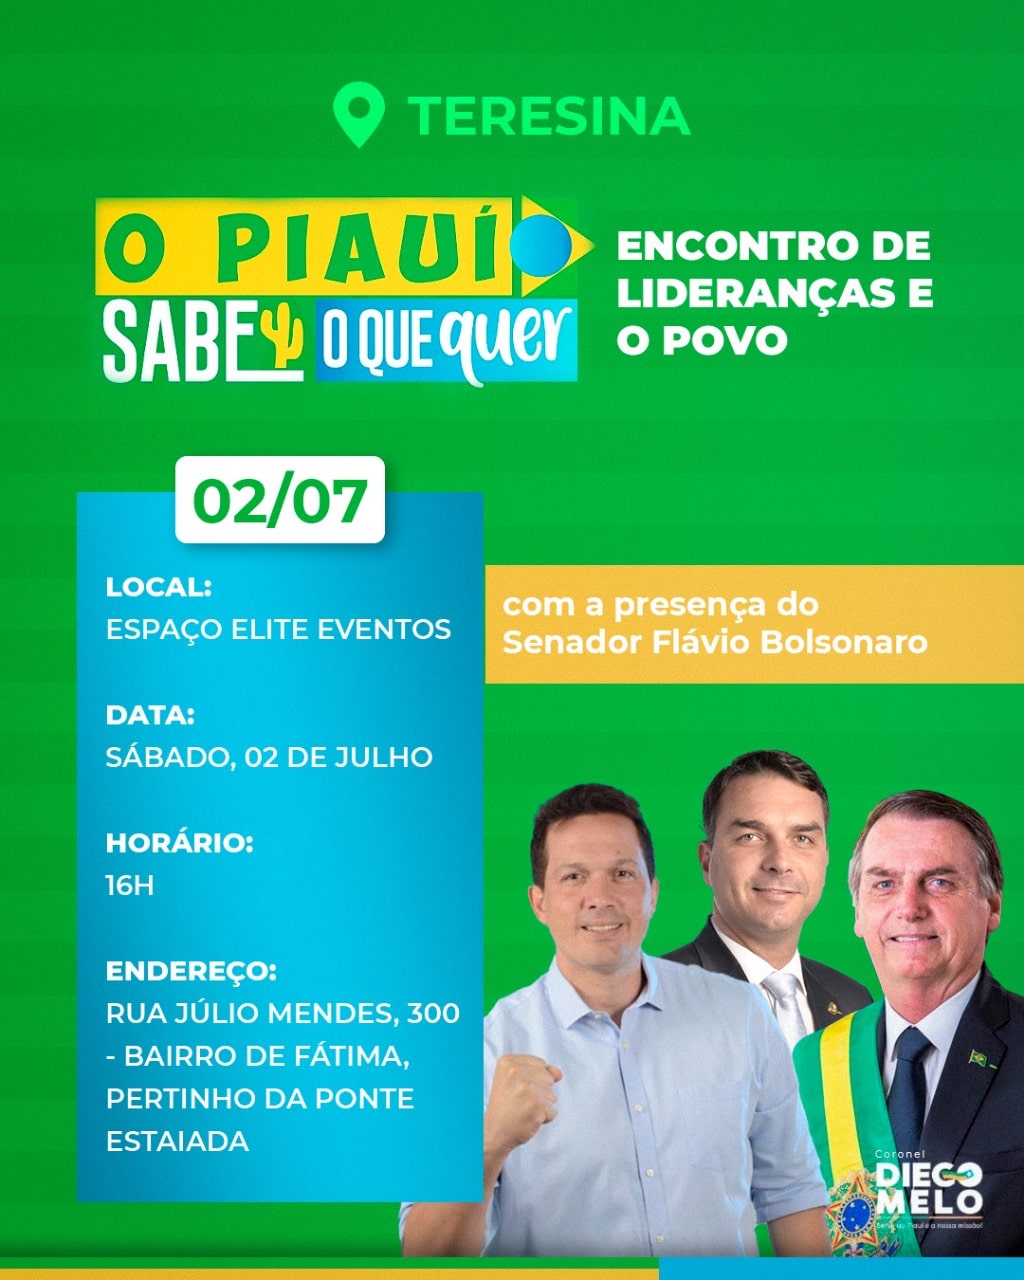 Deputado pergunta e responde: é o filho do Bolsonaro que vai ao Piauí? Vou! - Imagem 1